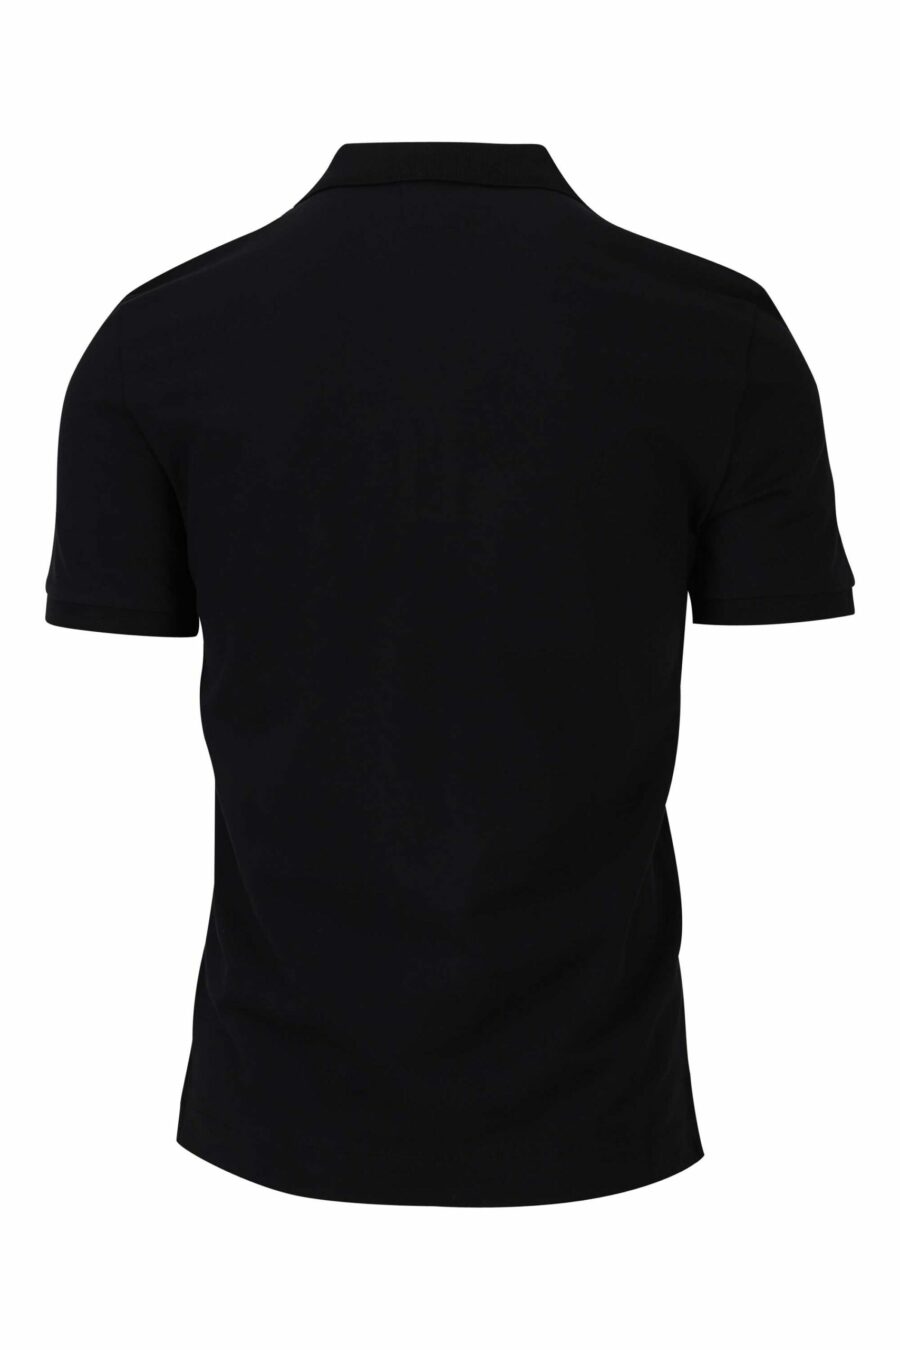 Polo noir avec patch mini-logo - 7620943564884 1 1 à l'échelle